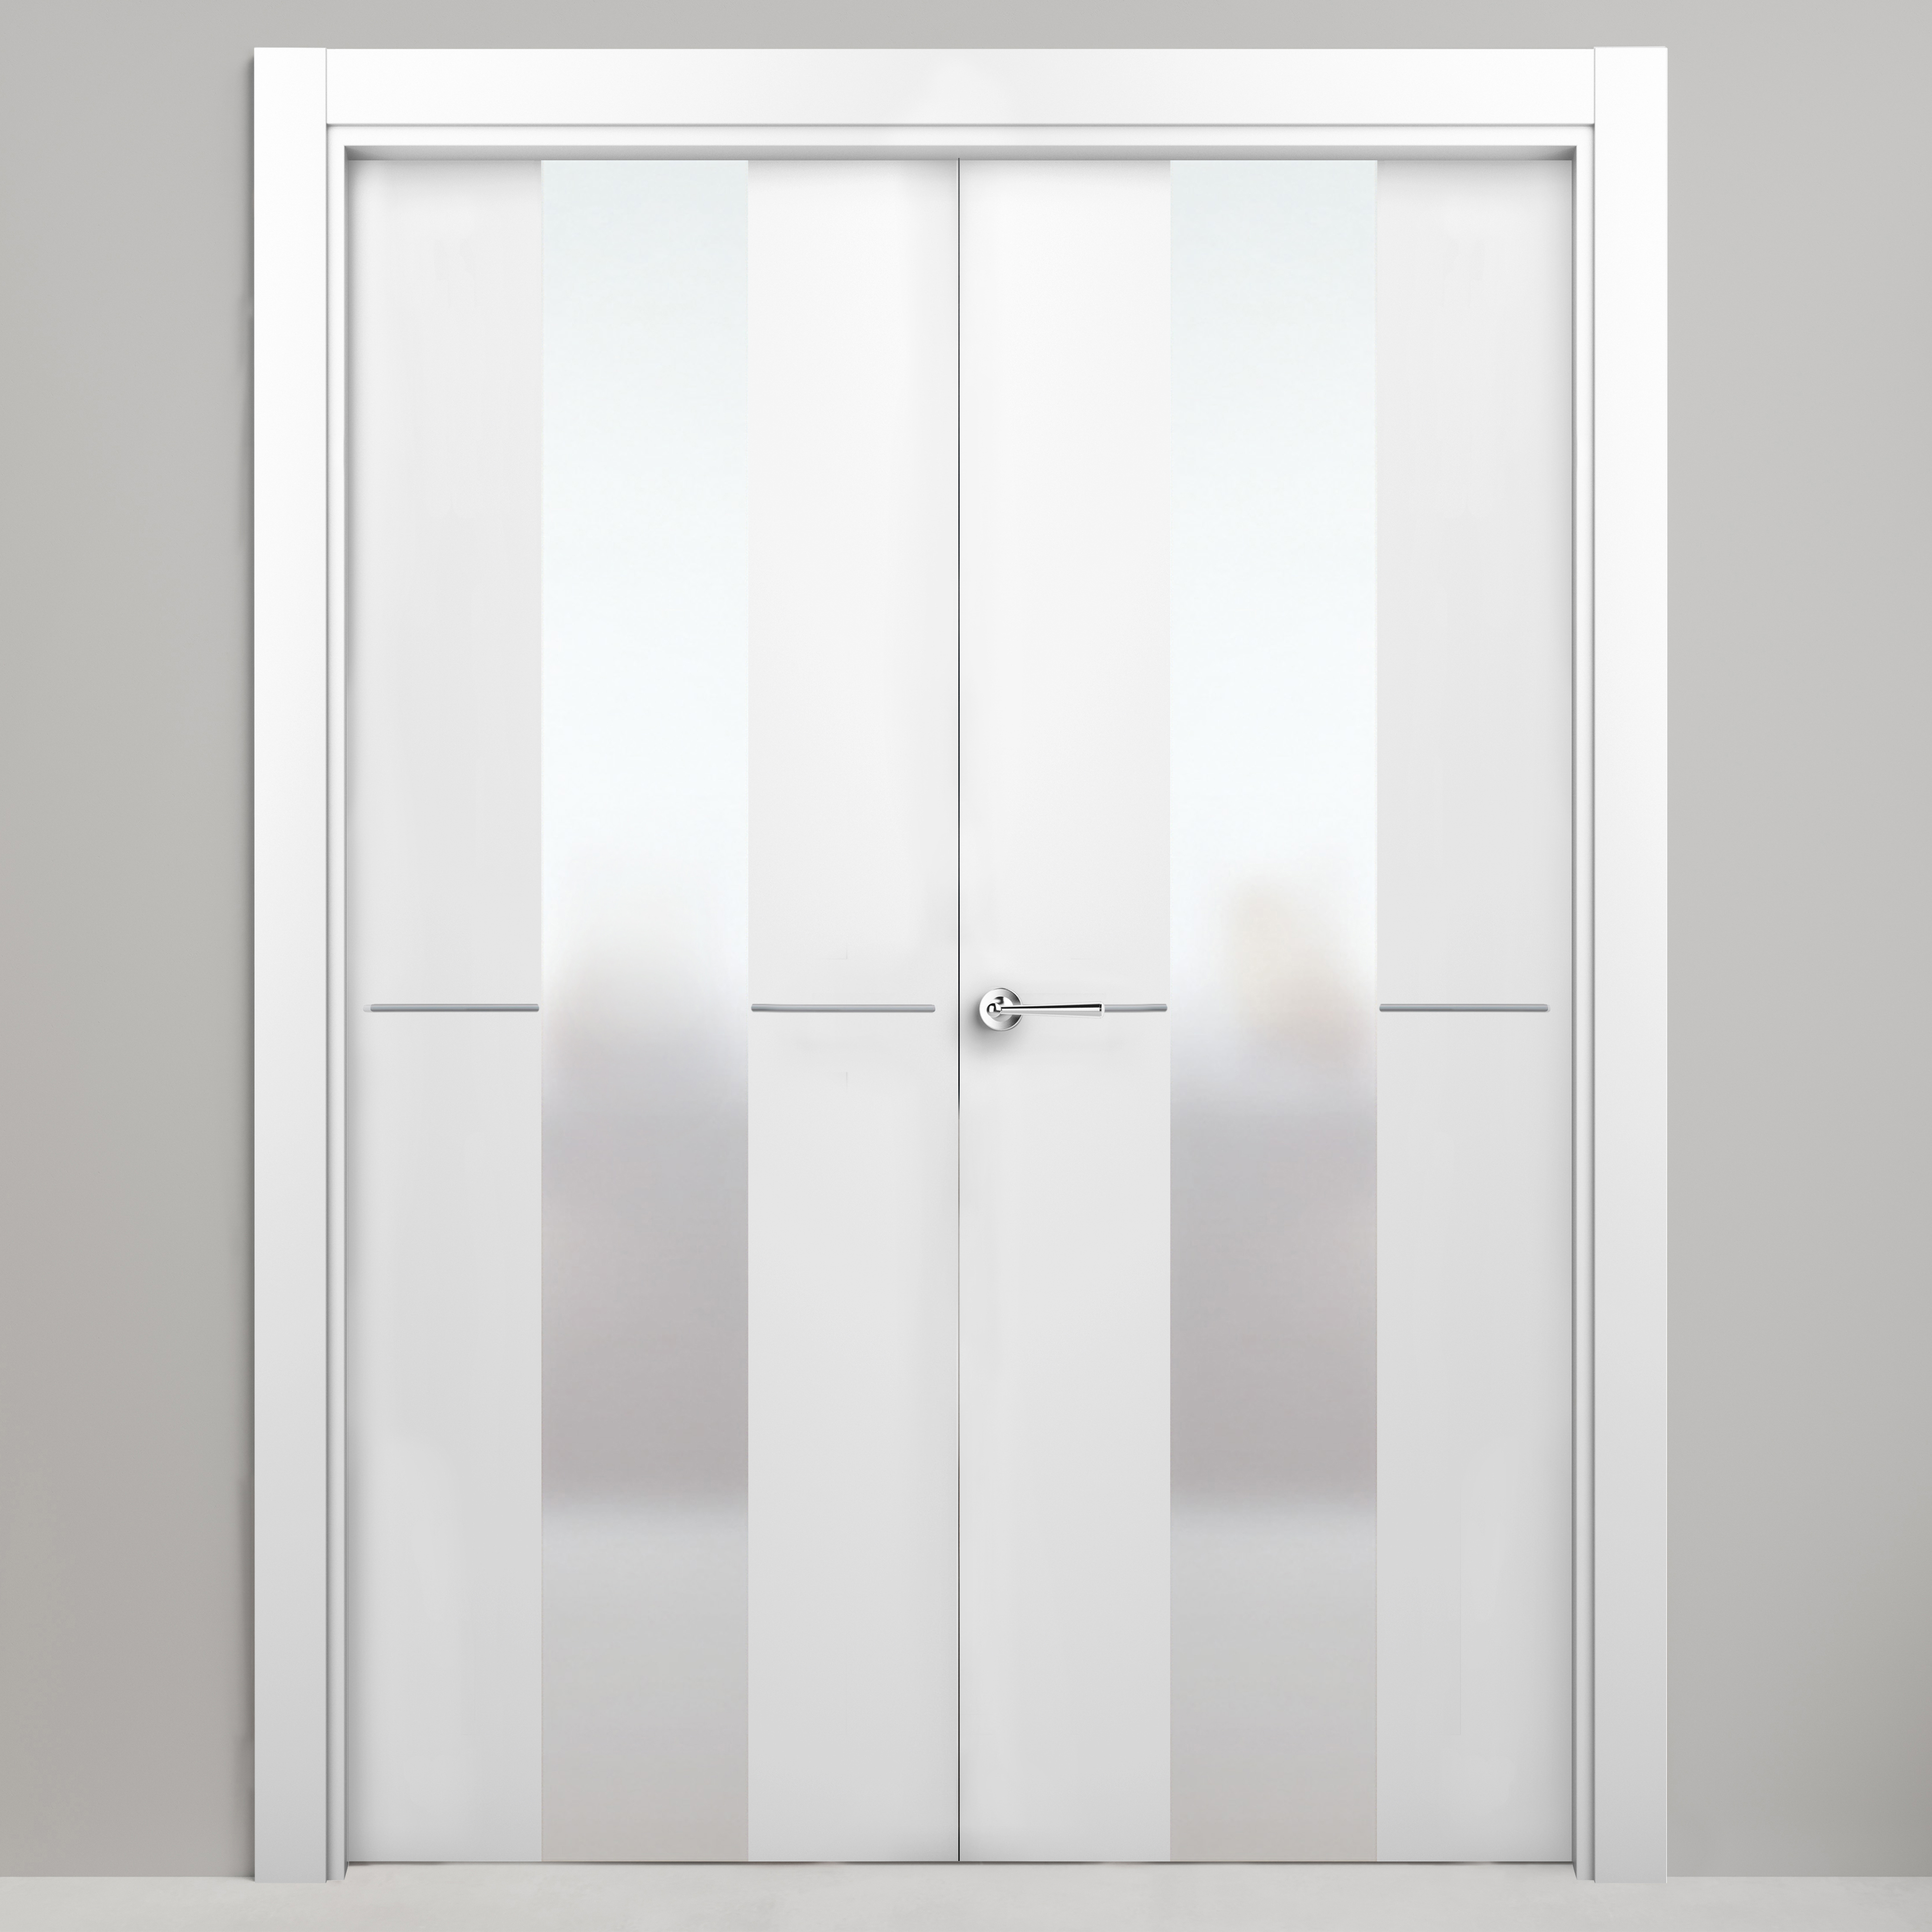 Puerta abatible paris blanca premium apertura izquierda de 145 cm